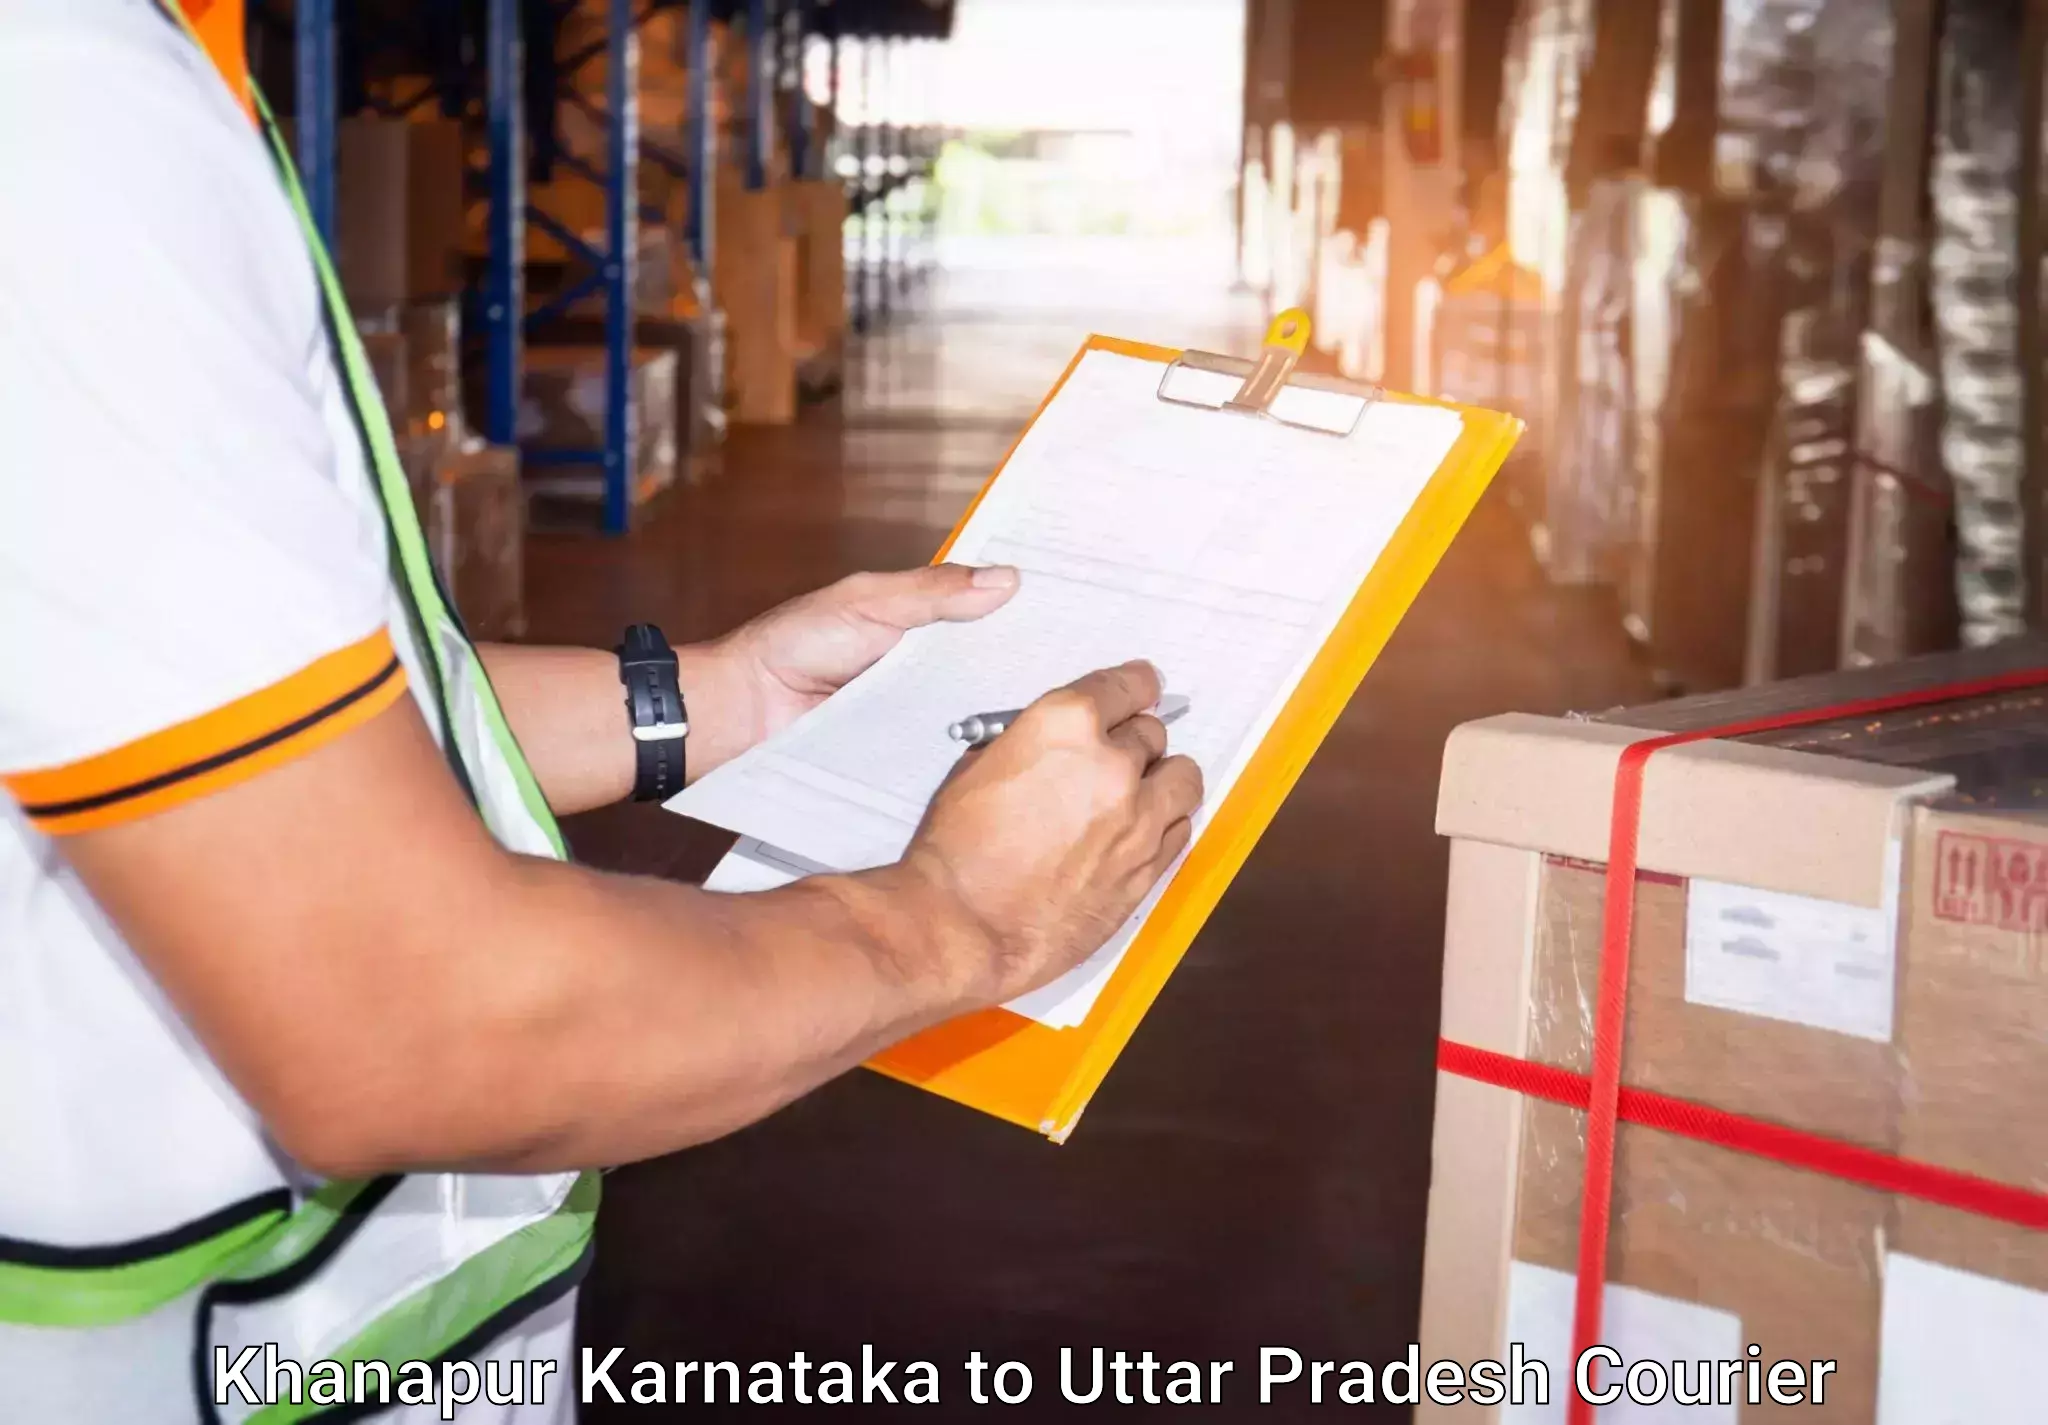 Luggage transfer service Khanapur Karnataka to Dataganj